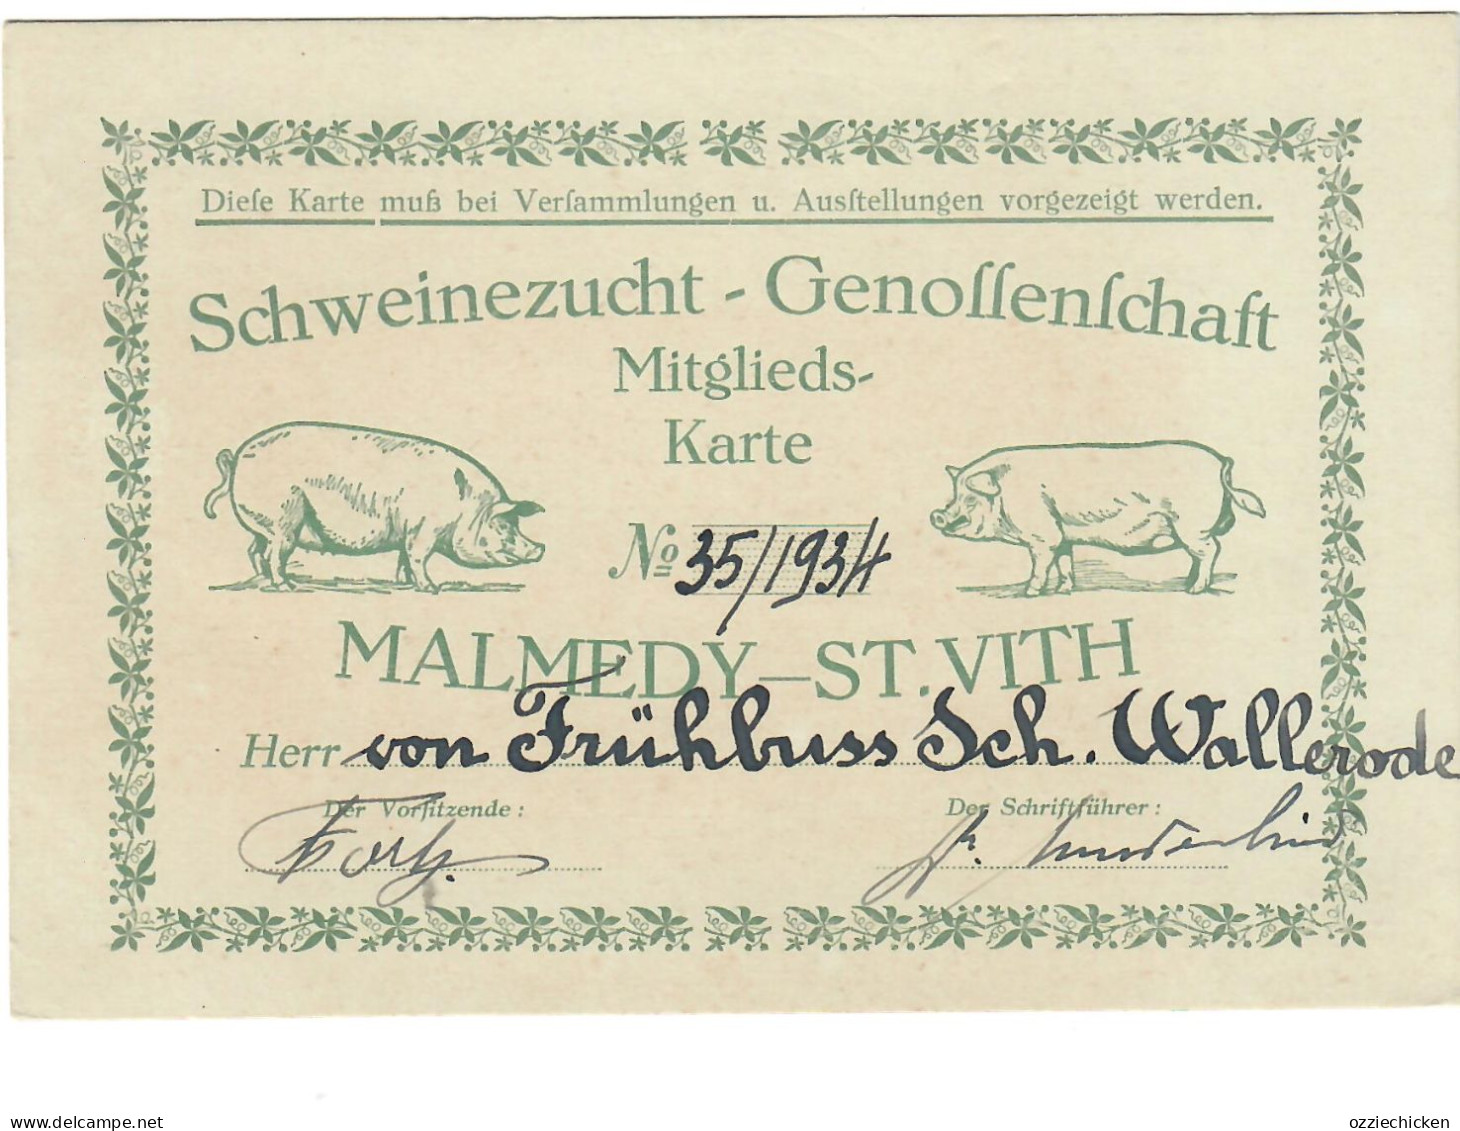 St Vith Schloss Wallerode Von Frühbuss 1935 Mitgliedskarten Pferde - Schweinezucht  Kanton Malmedy St Vith - Saint-Vith - Sankt Vith